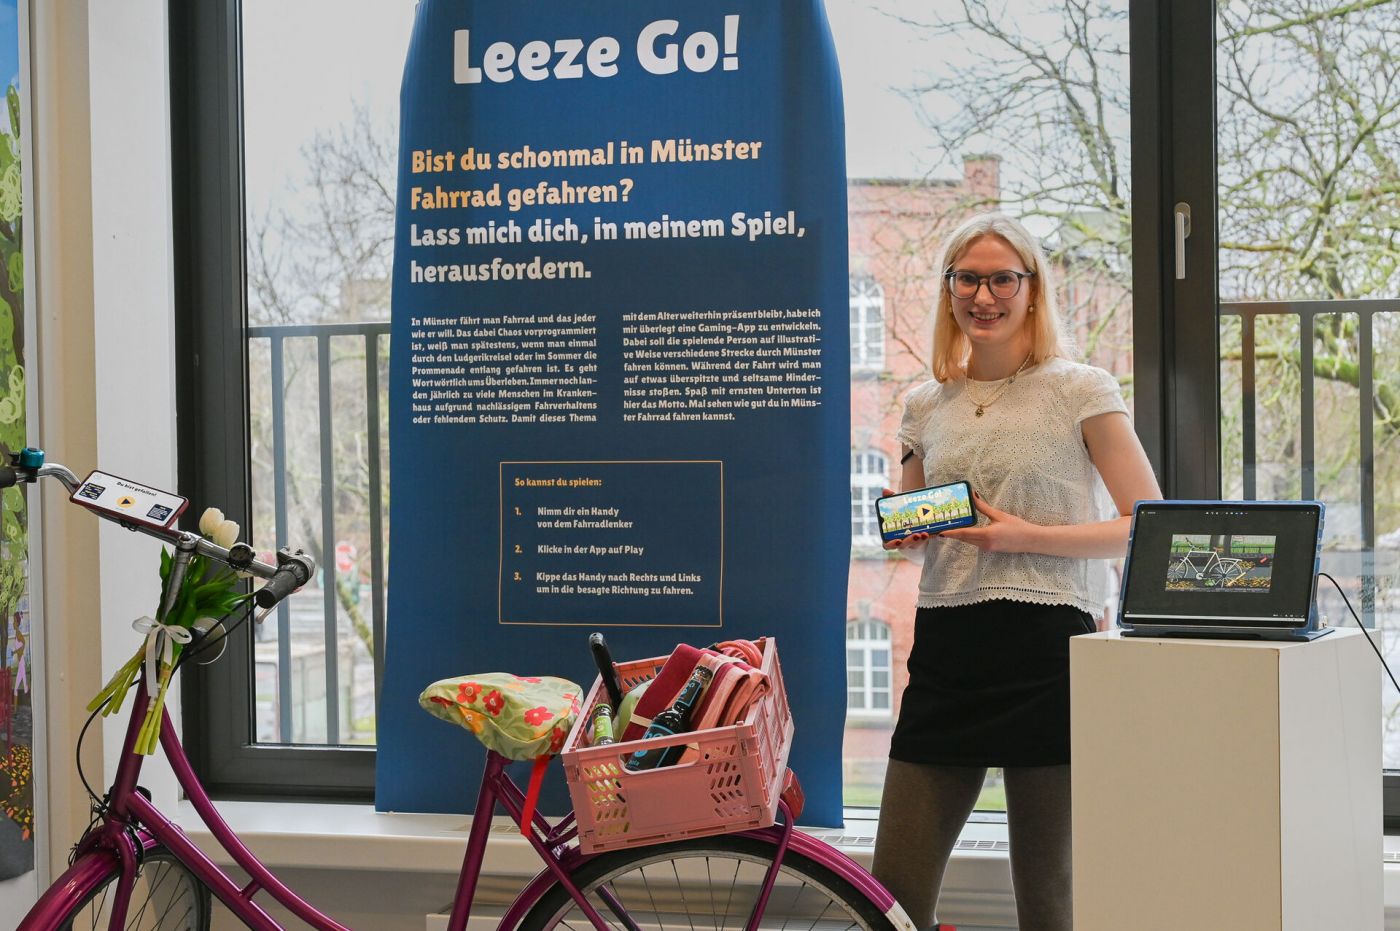 Eine Studentin zeigt eine App auf ihrem Smartphone an einem Ausstellungsstand. Daneben steht ein Fahrrad.